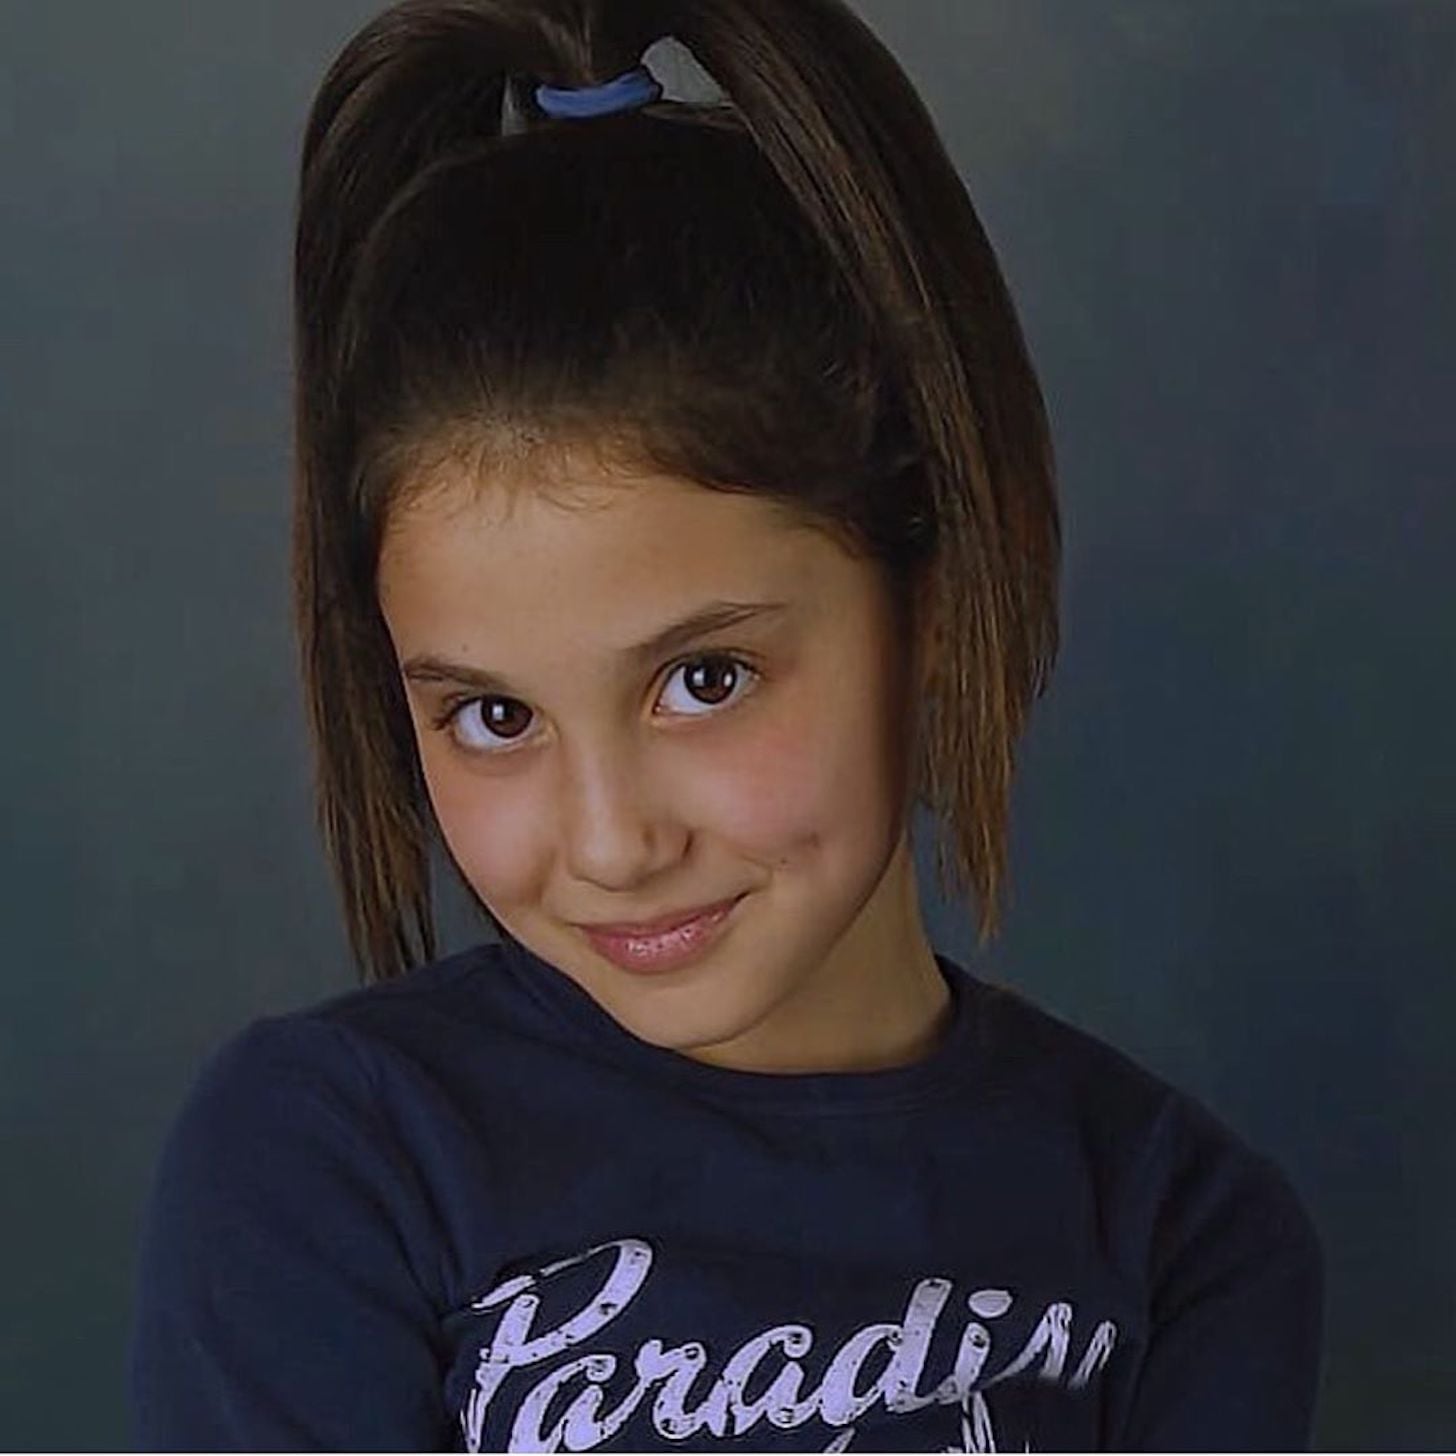 Ariana Grande As A Kid